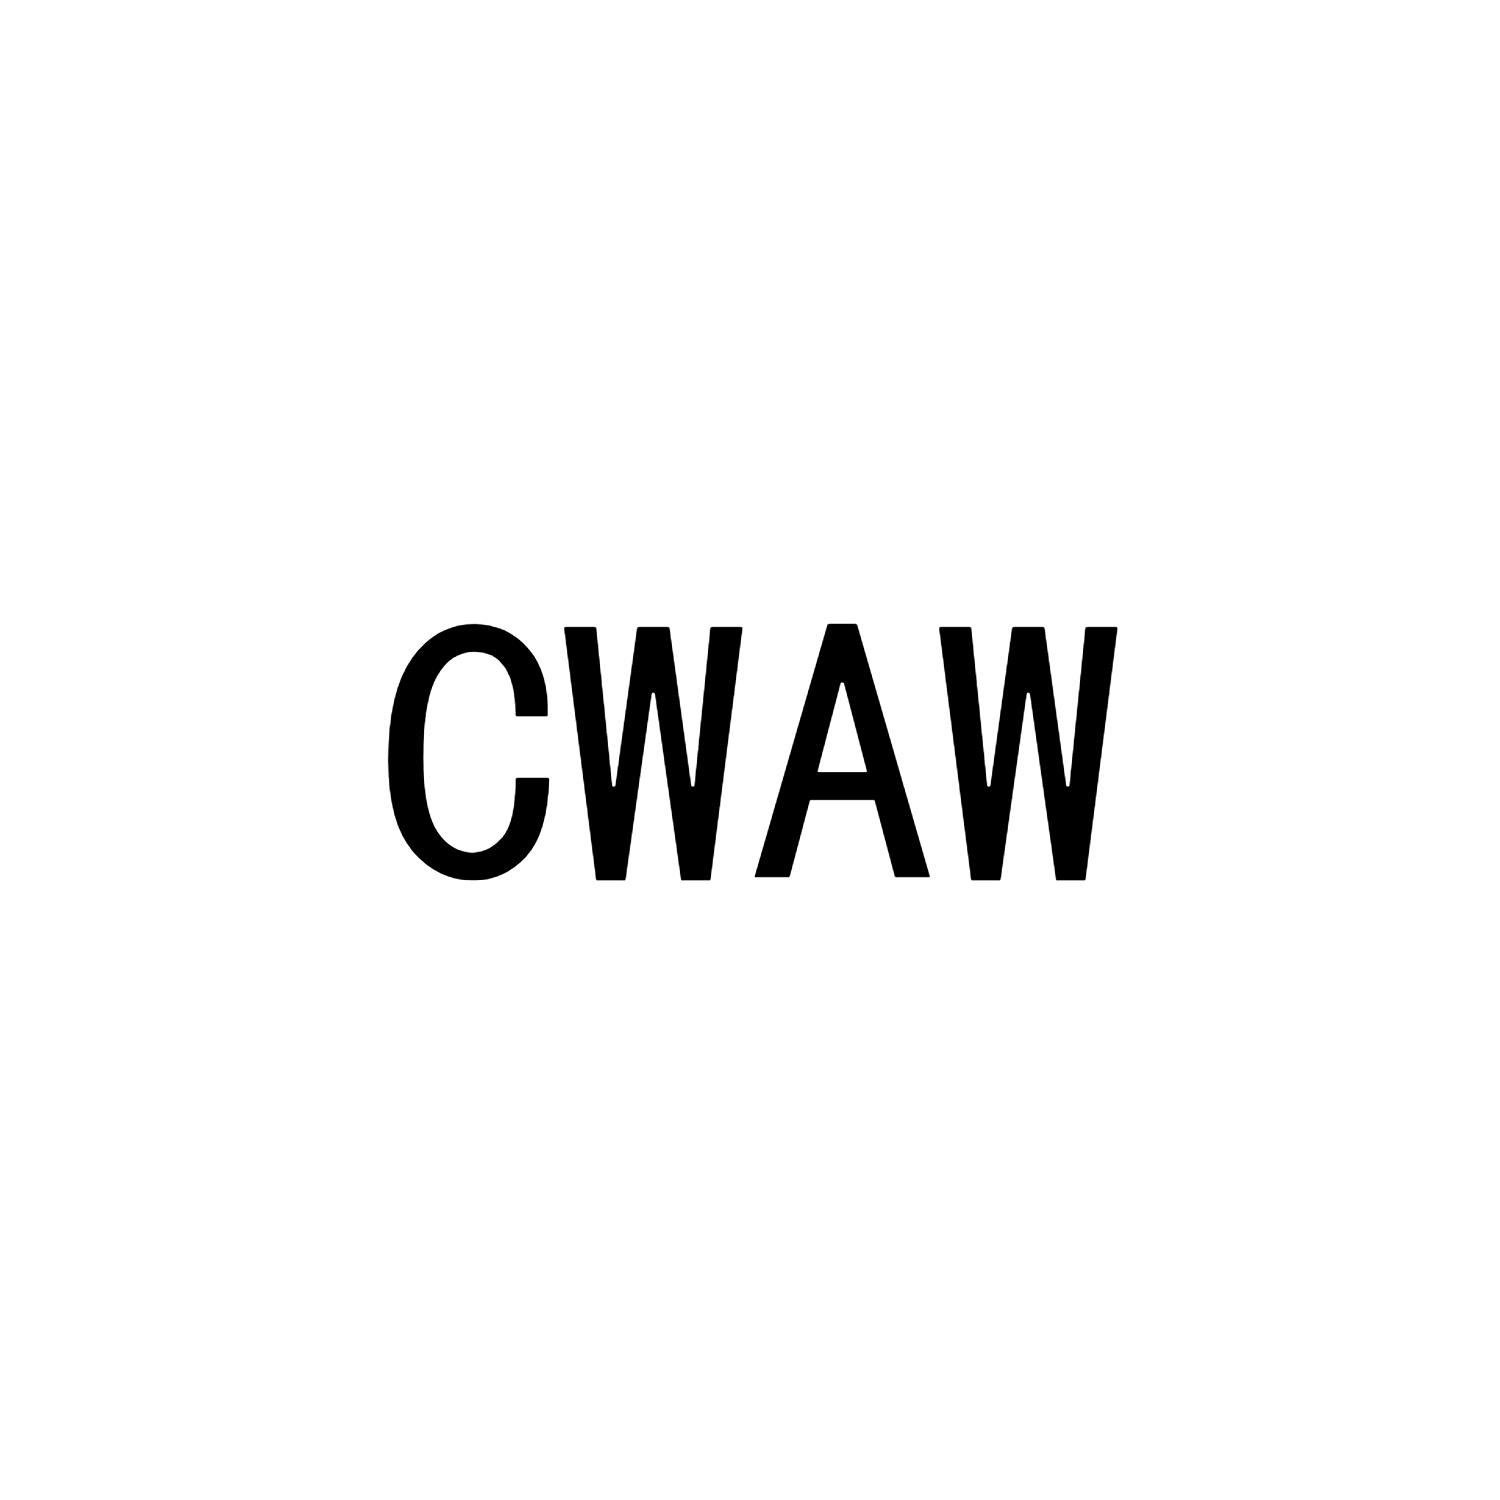 CWAW